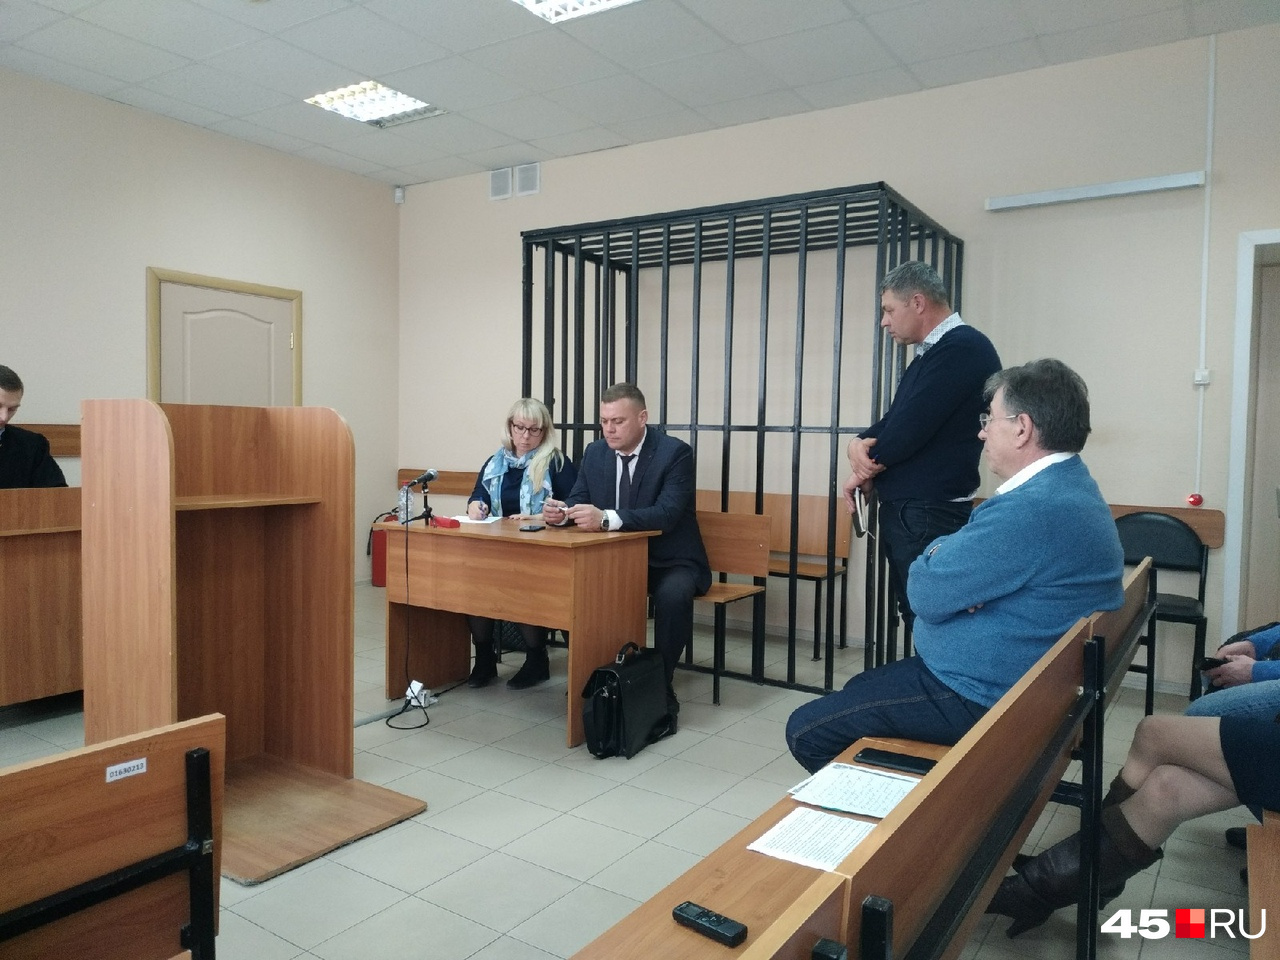 Андрей Тябутов и во время прений, и в последнем слове кратко попросил признать его невиновным